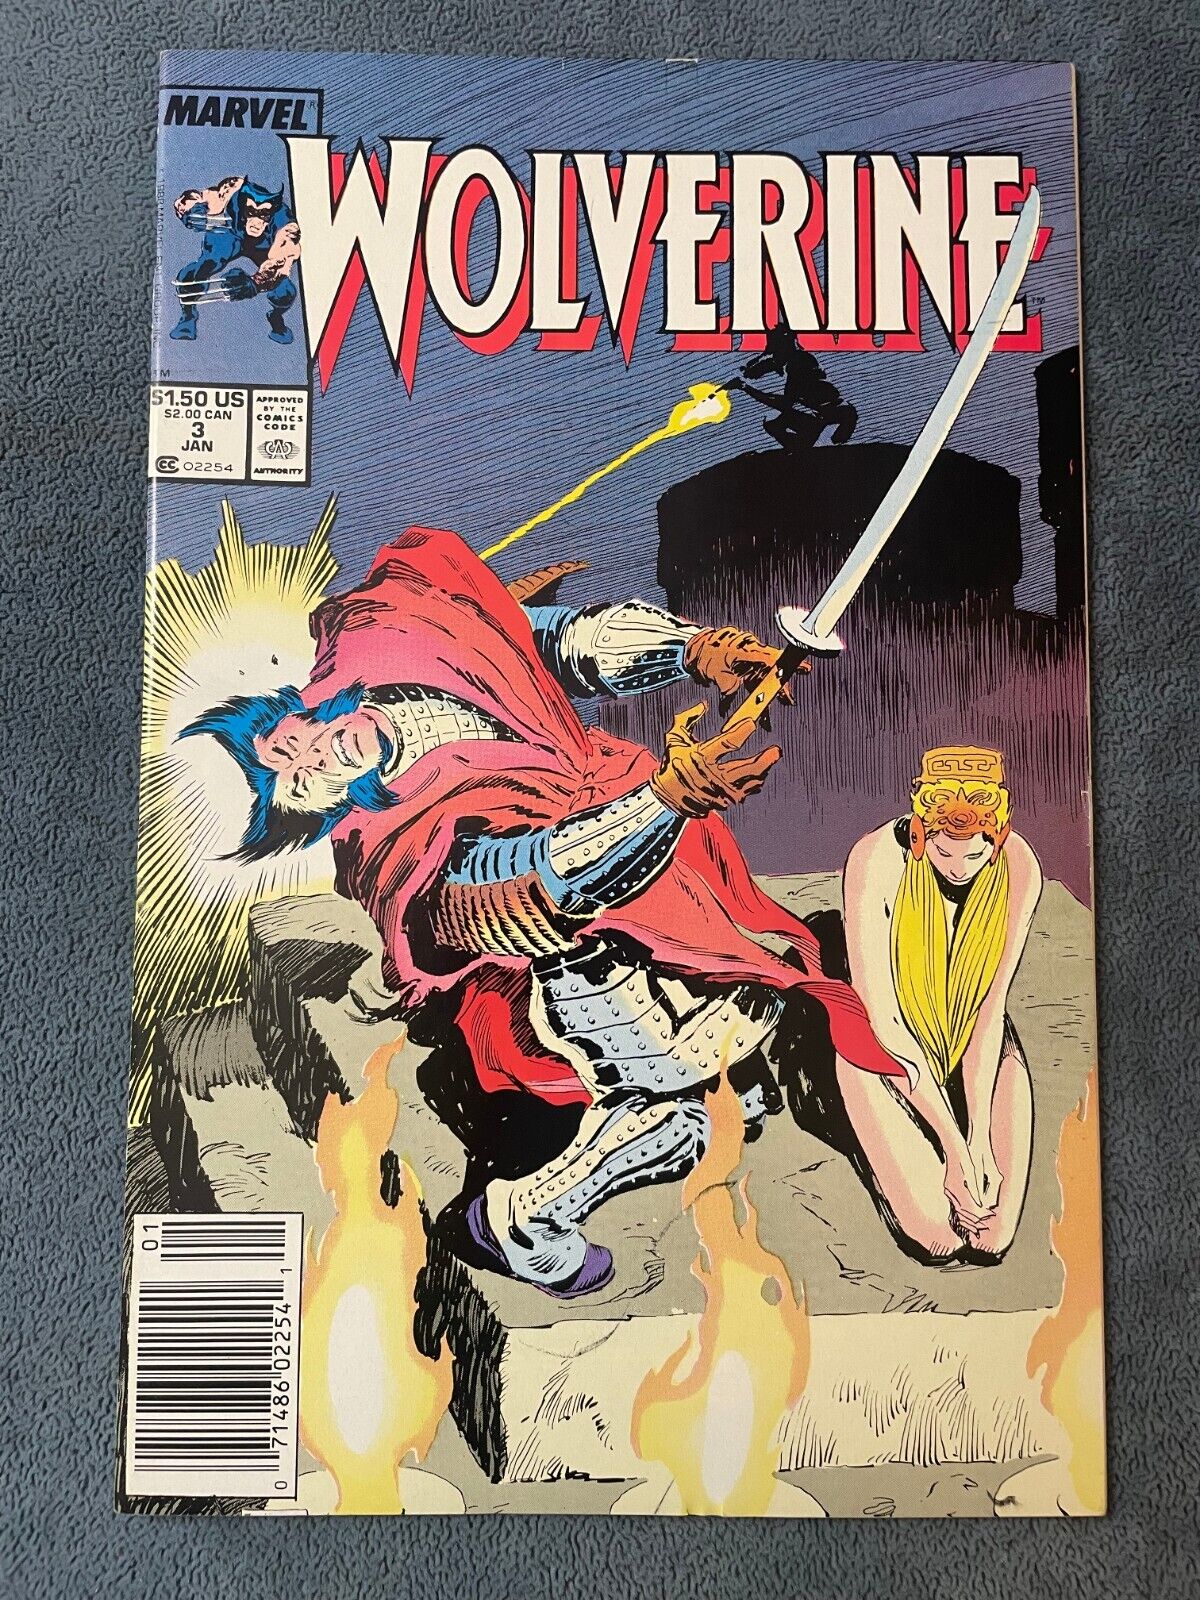 Wolverine #3 Newsstand 1989 Marvel Comic Book Blade Blade Chris Claremont VF